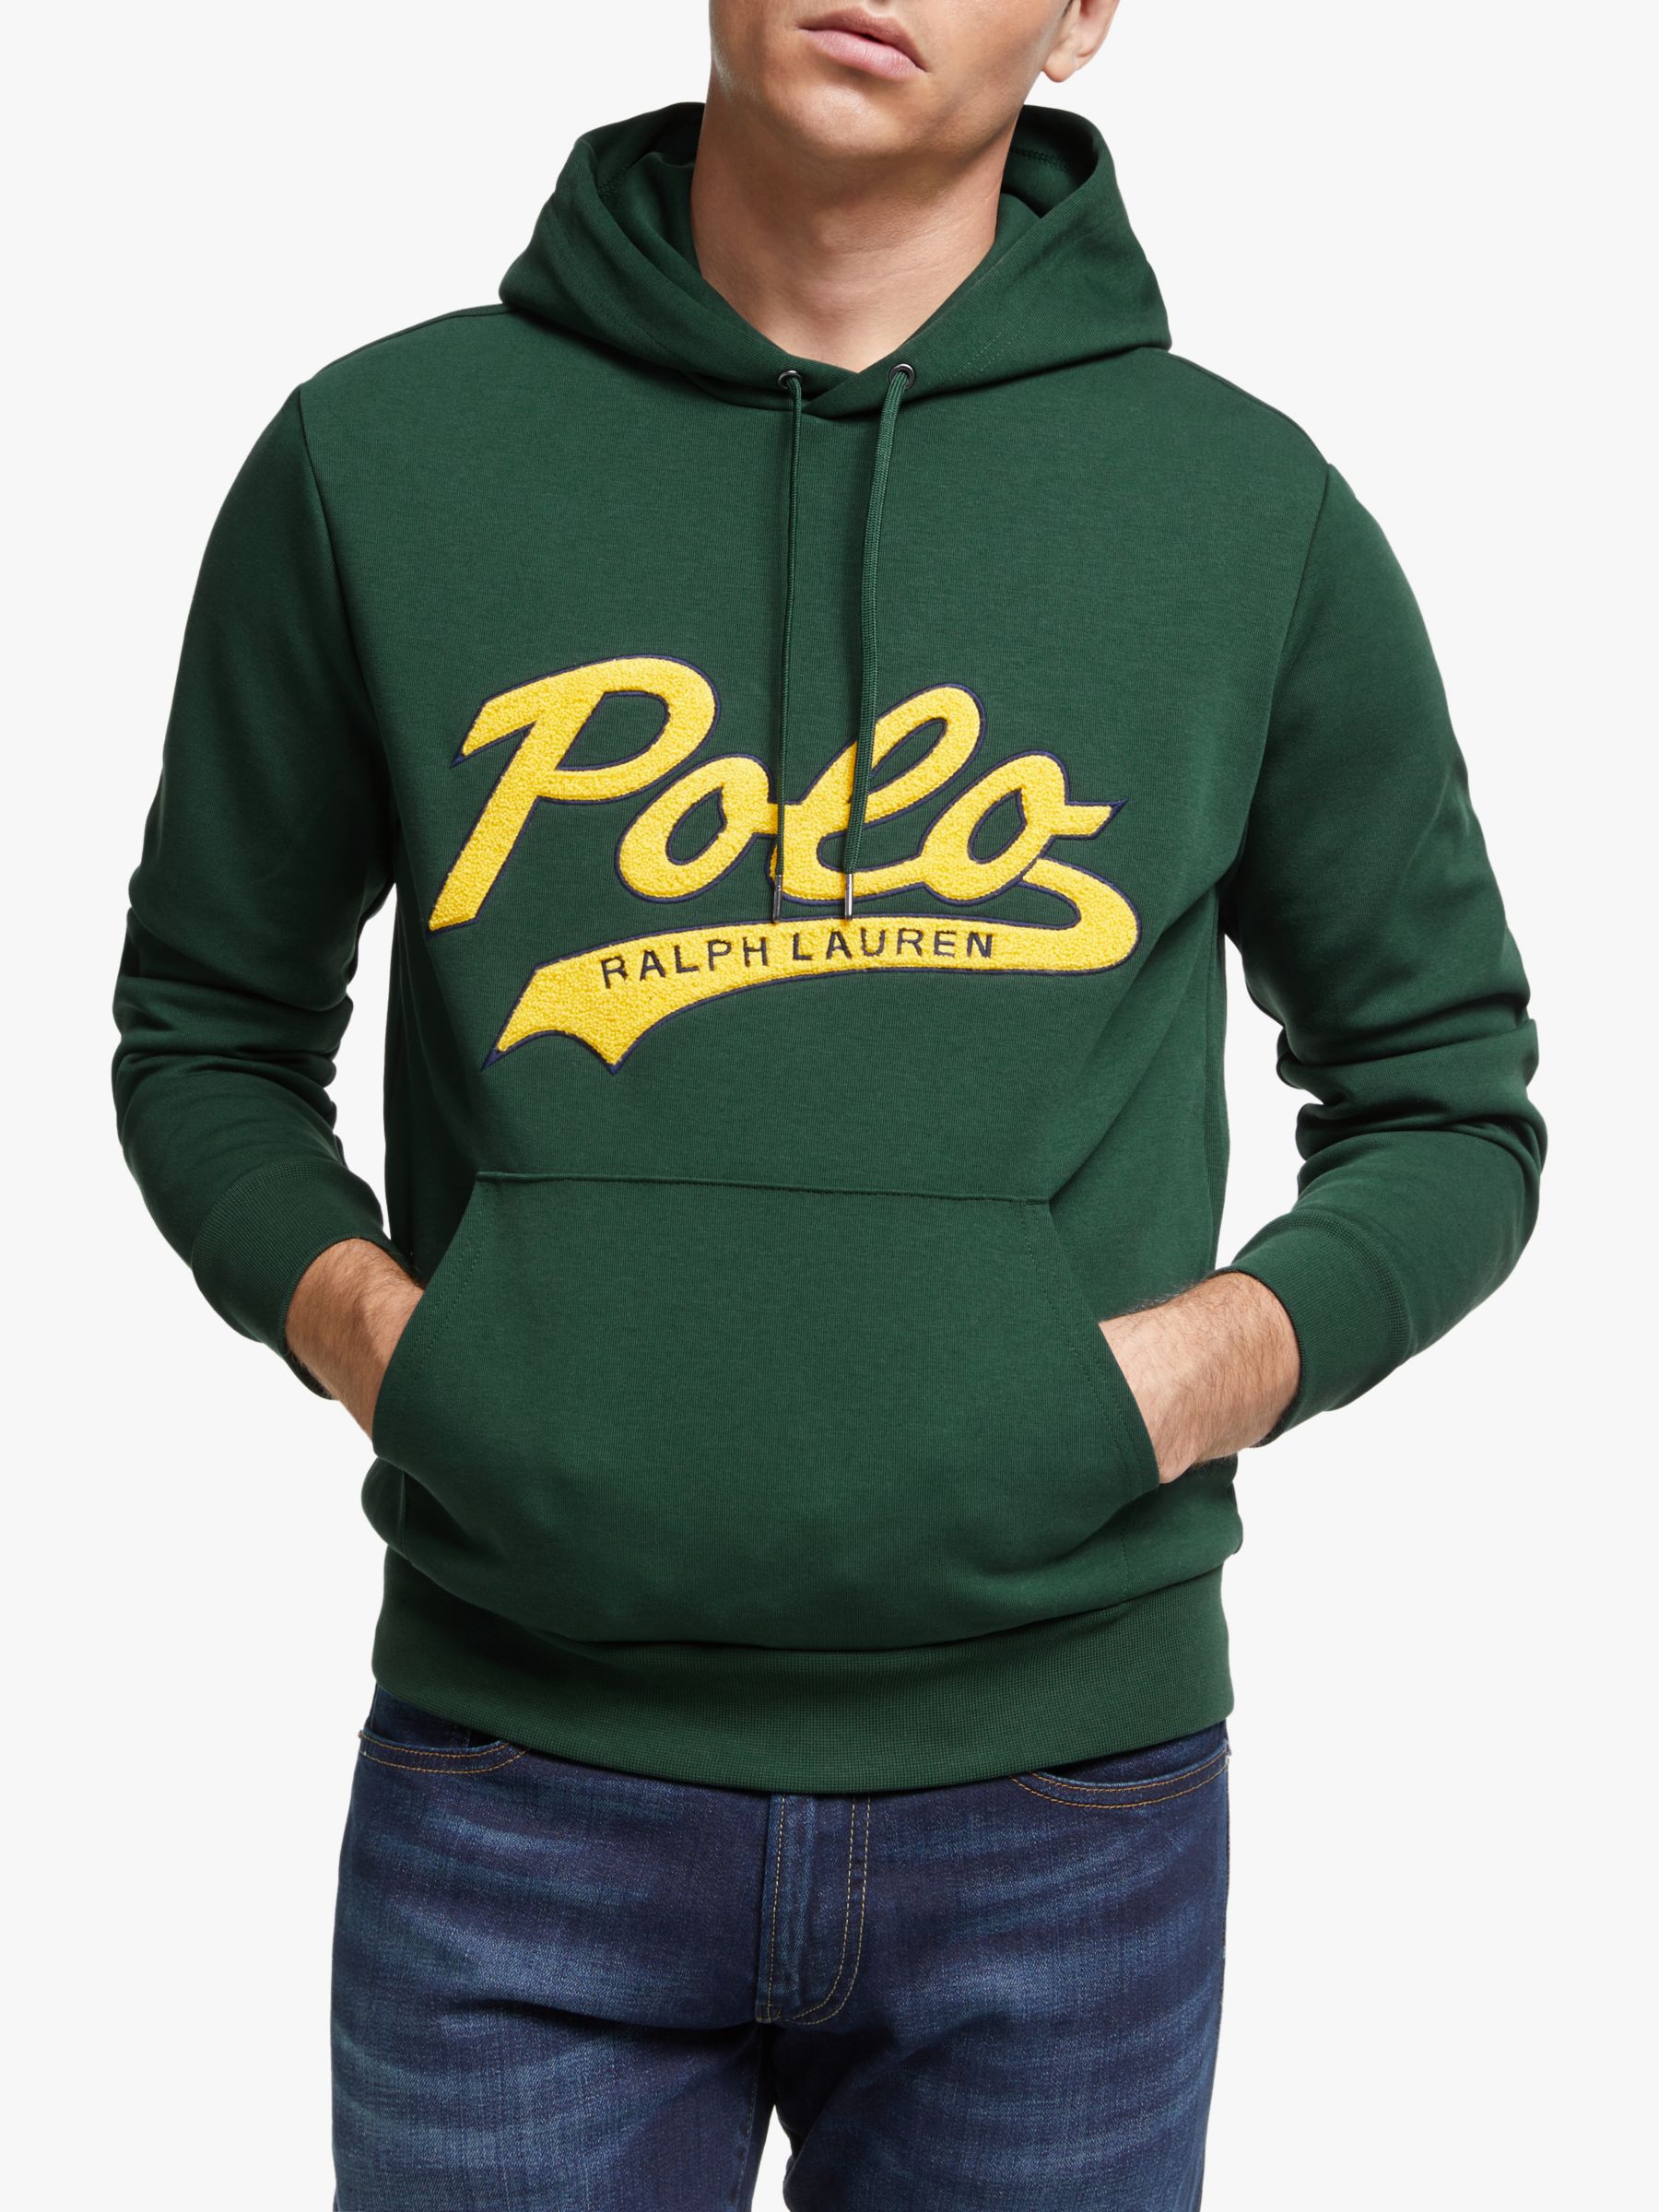 polo ralph lauren hoodie green